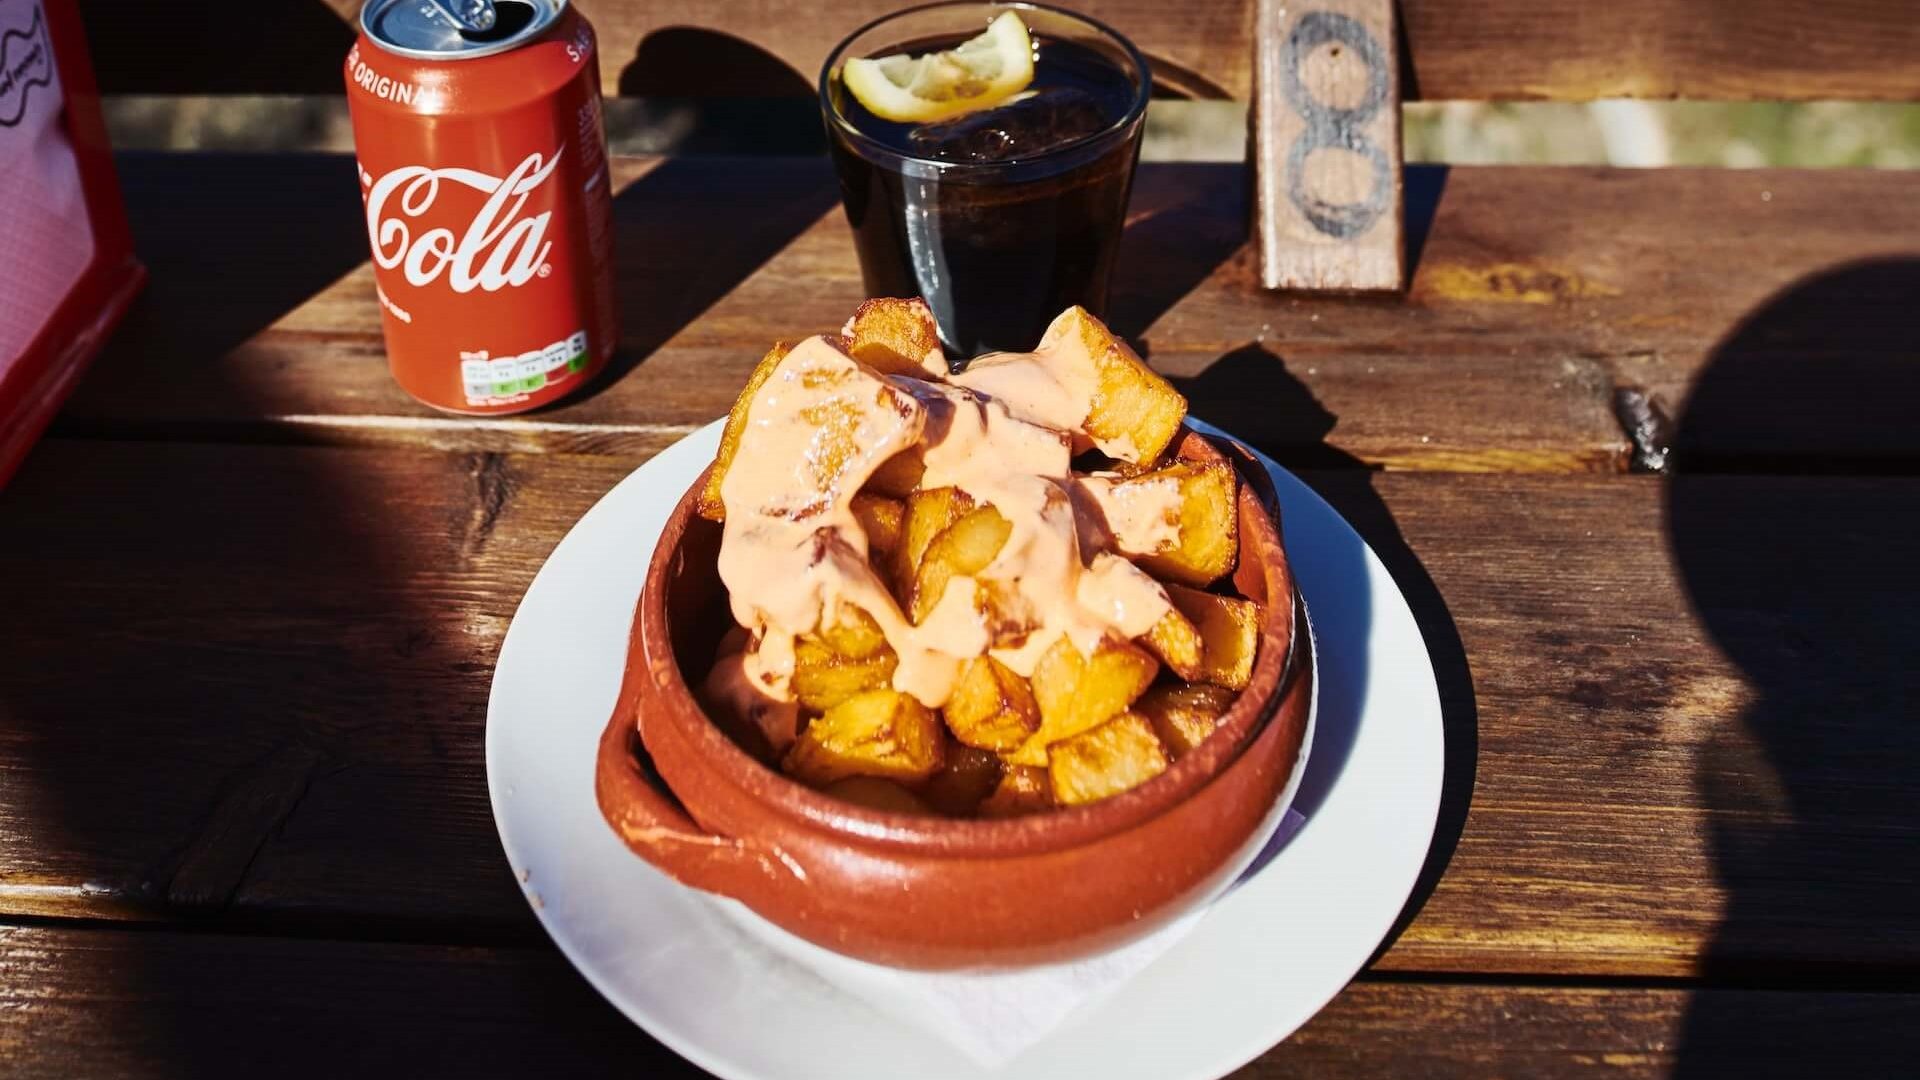 Patatas bravas, un popular plato de tapas español, con patatas fritas cubiertas con salsa de tomate picante y alioli, este plato le llevará a un viaje culinario.